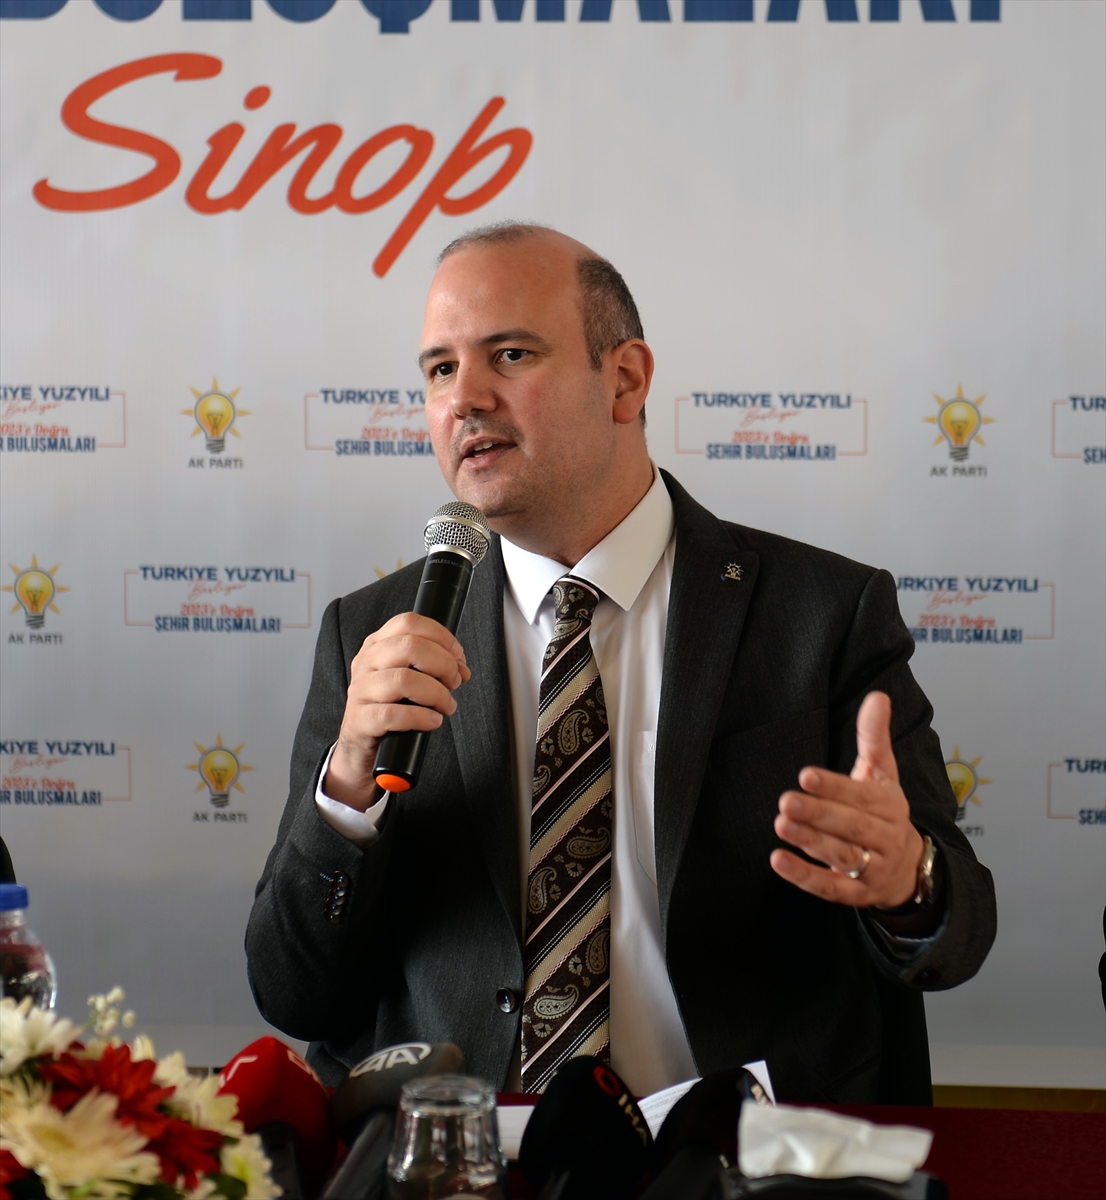 AK Parti Genel Başkan Yardımcısı İleri, Sinop'ta konuştu: